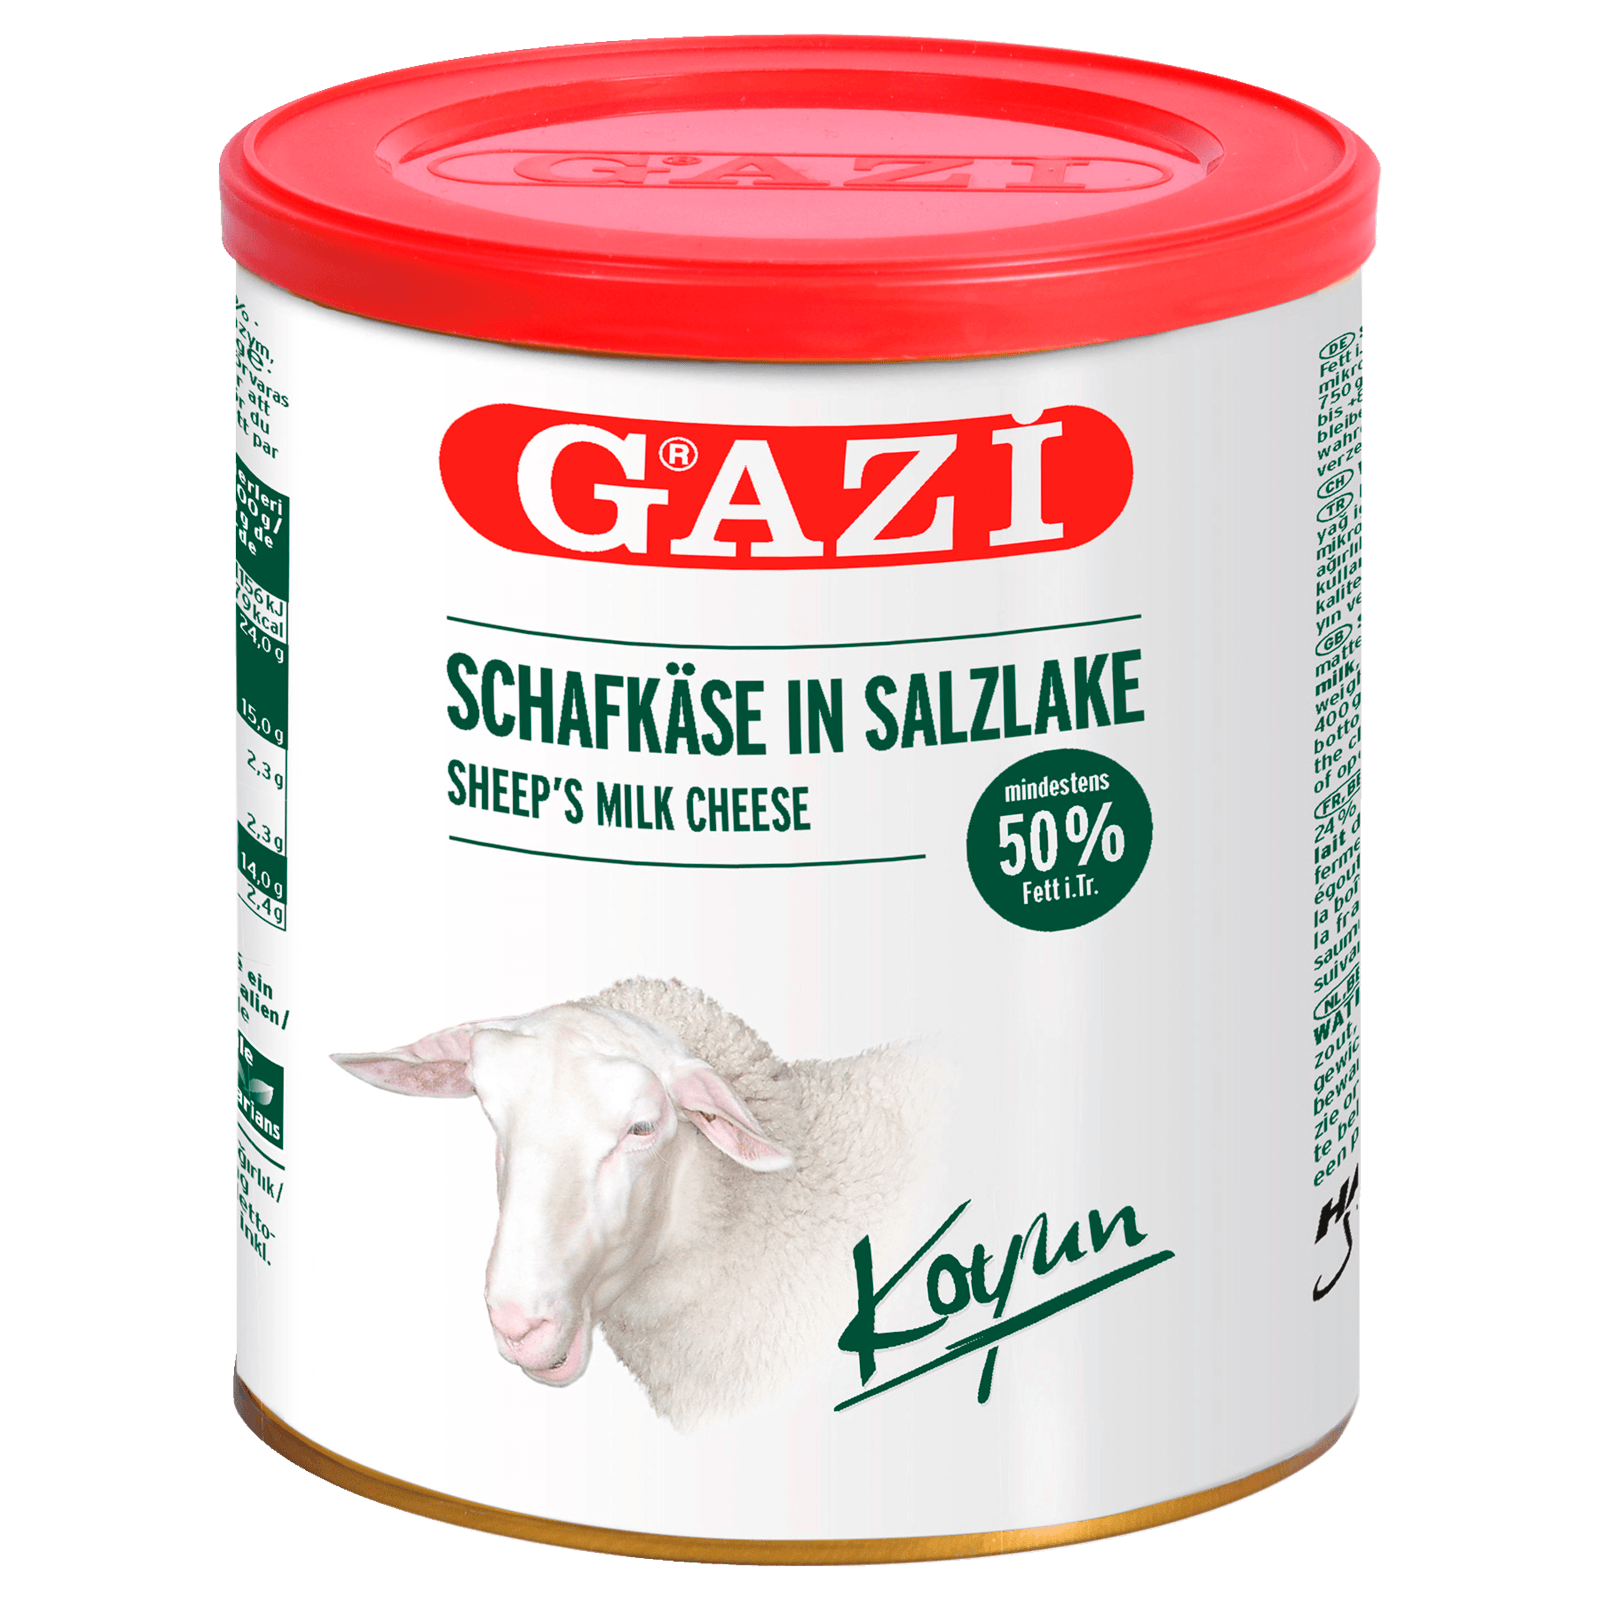 Gazi Schafskäse in Salzlake 400g bei REWE online bestellen!